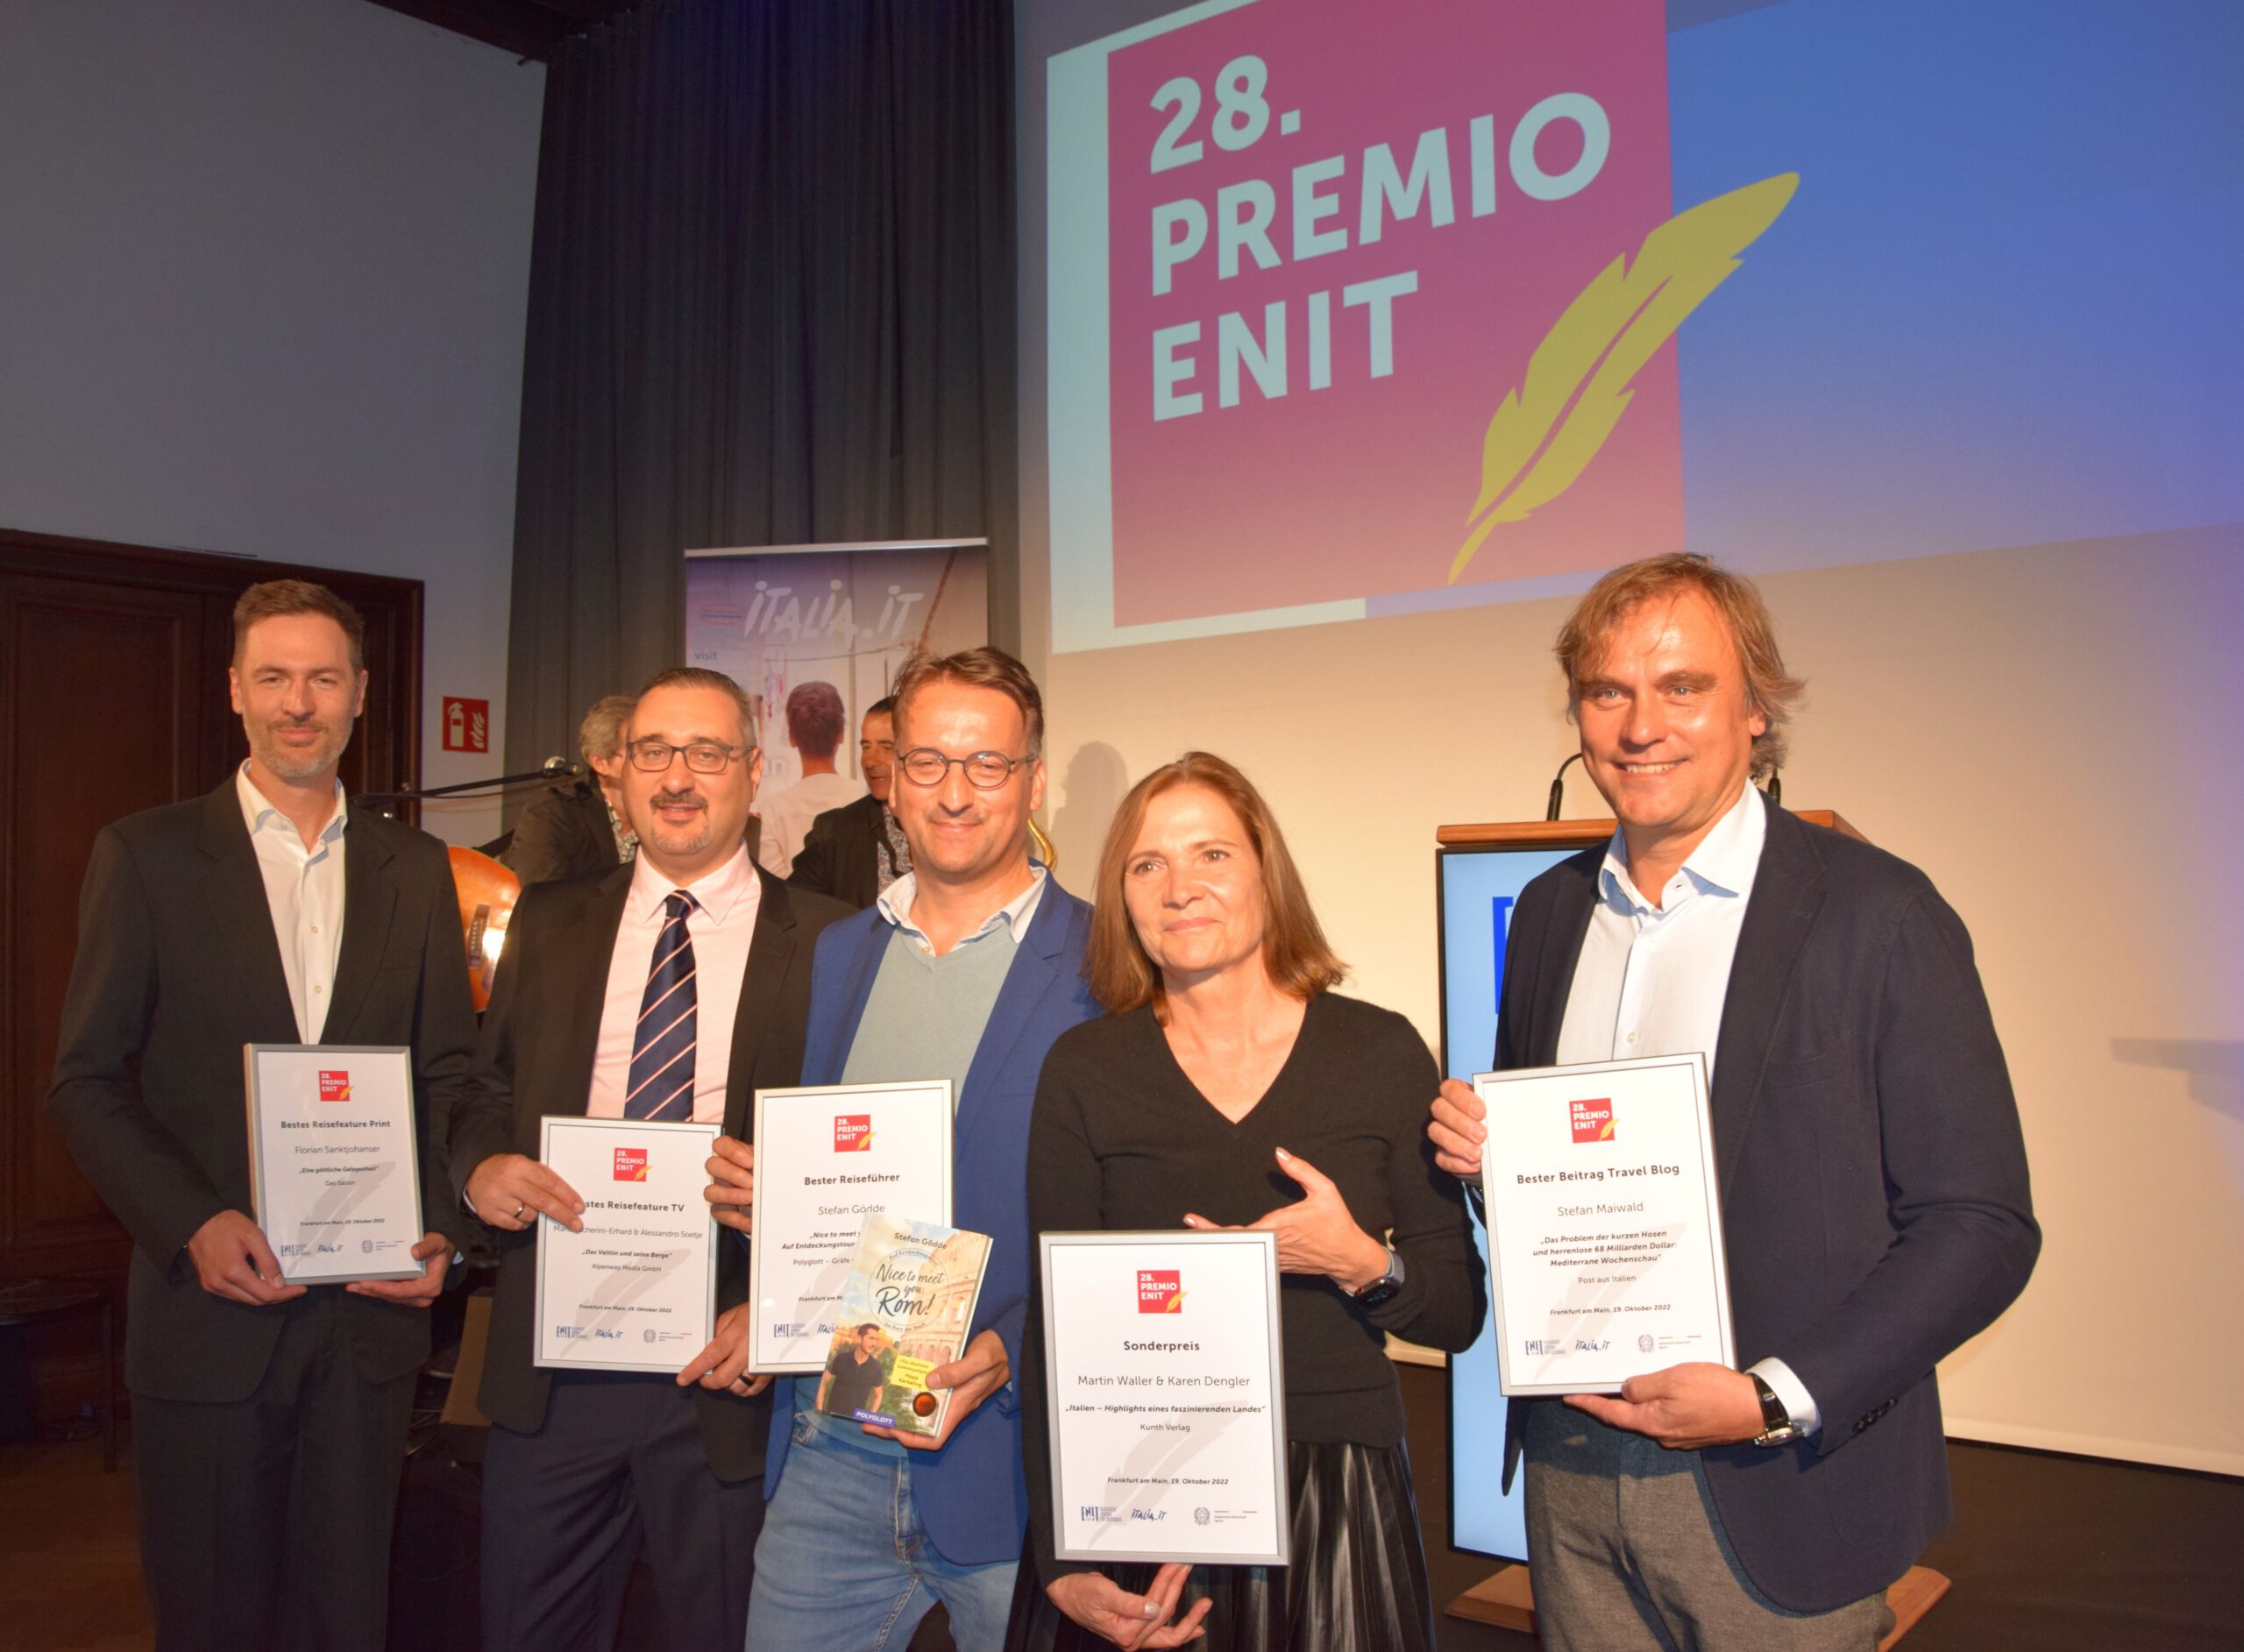 Glückliche Gewinner beim 28. Premio ENIT in Frankfurt: Prämierte Beiträge zeigen Facettenreichtum des Belpaese